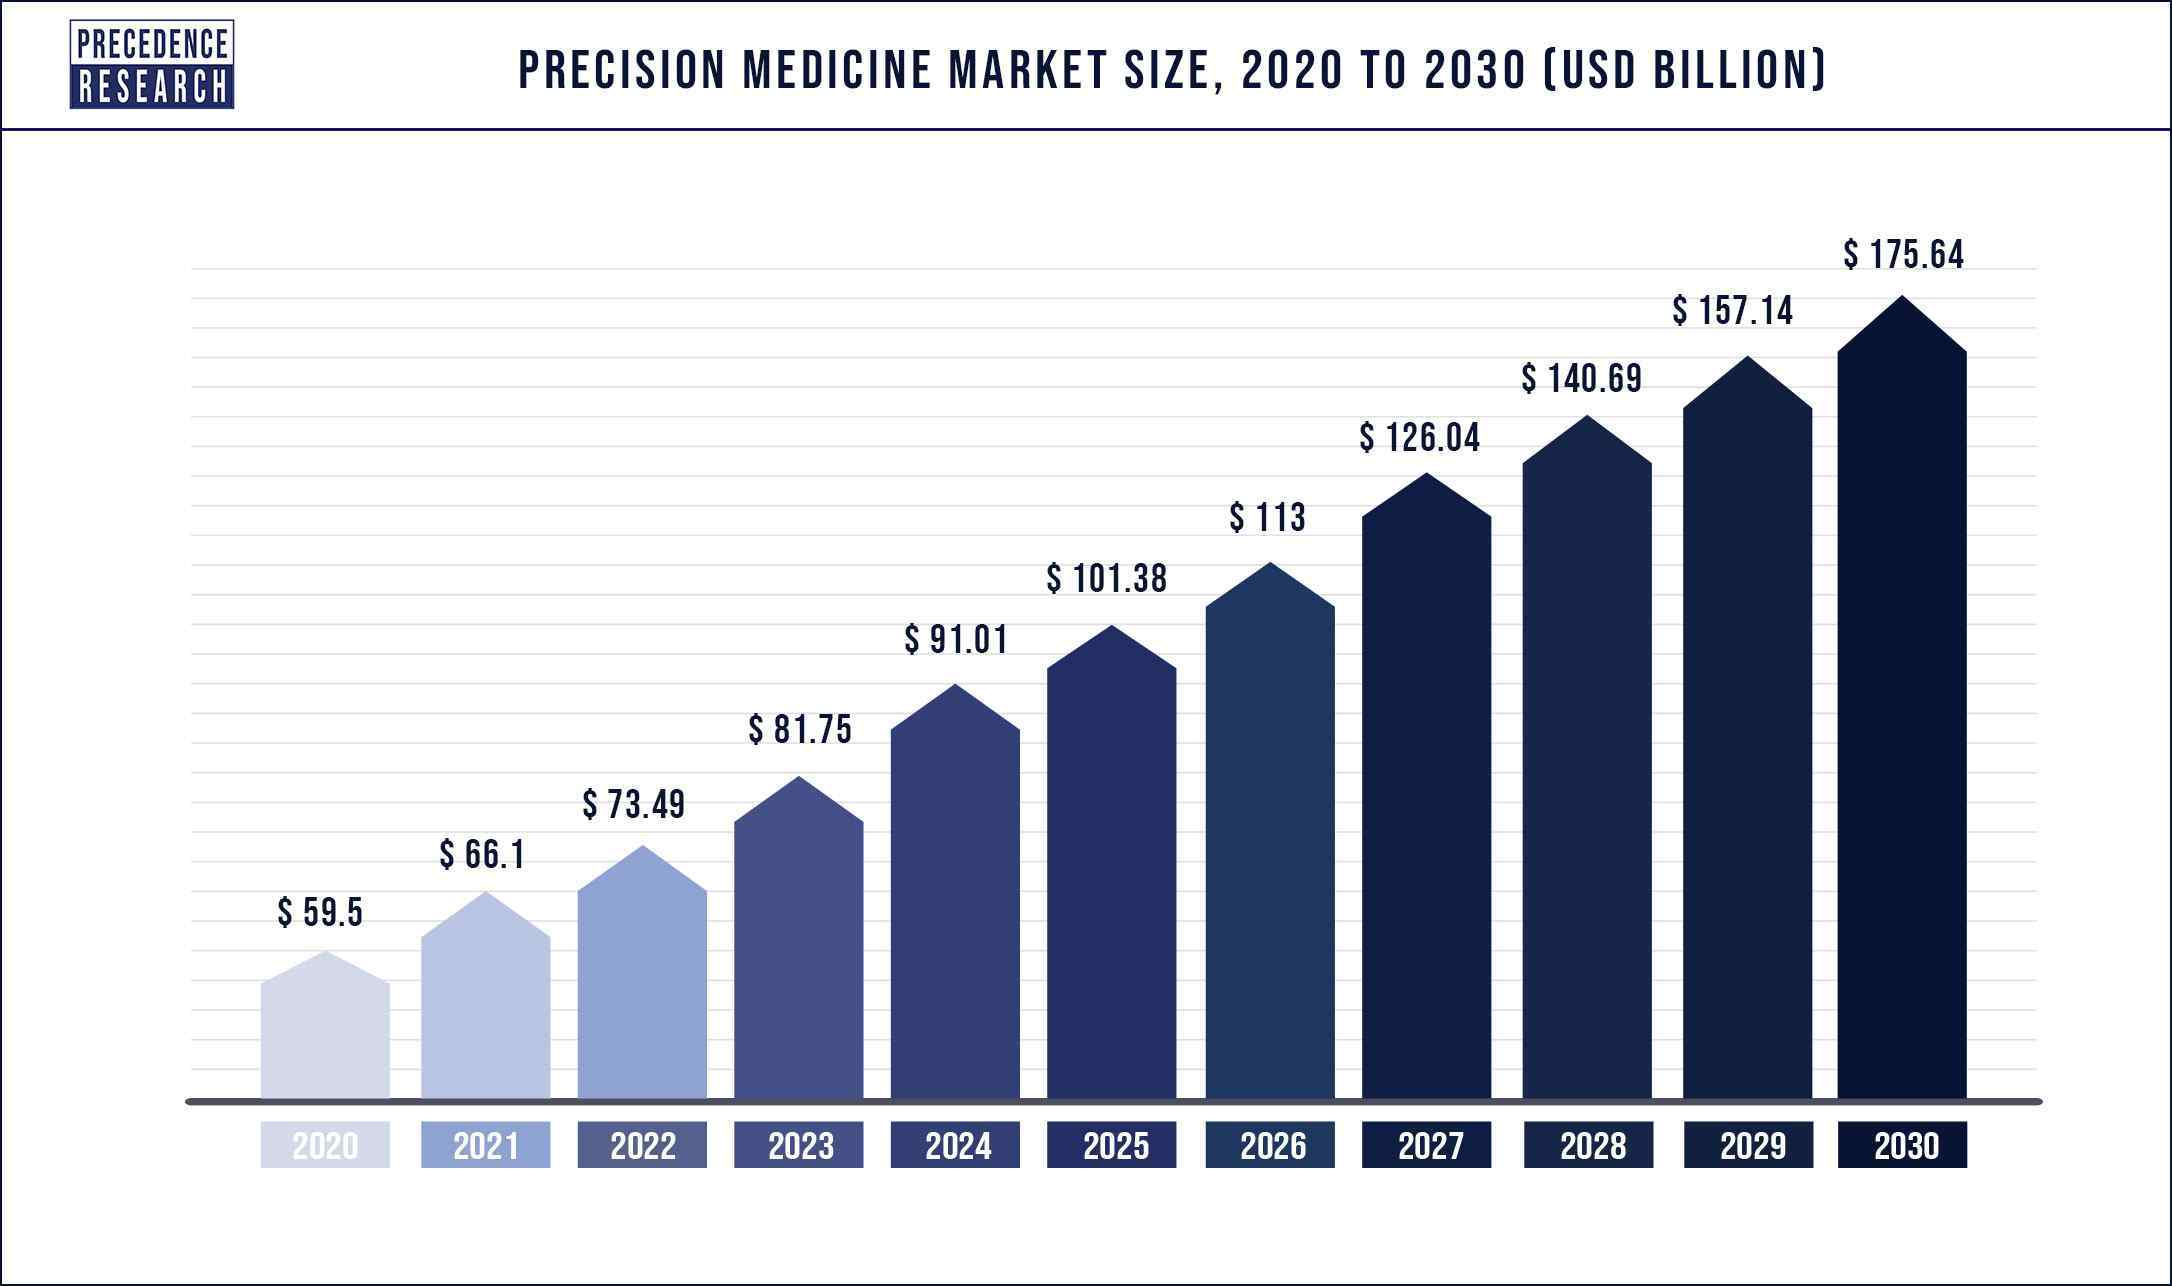 Precision Medicine Market Size 2020 to 2030